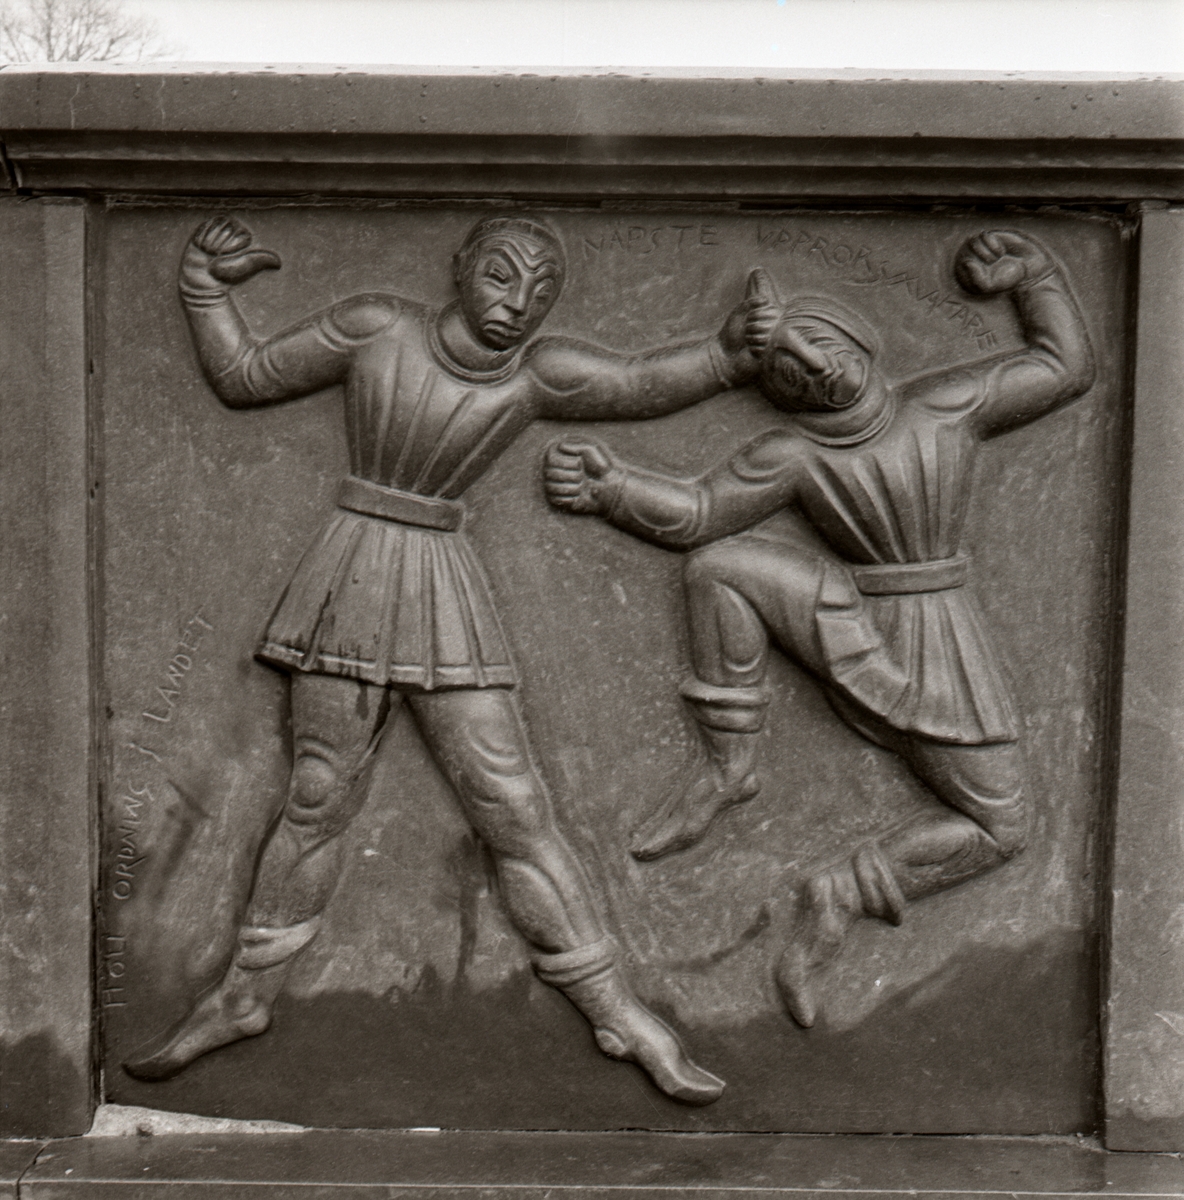 Detalj av sockeln på Folkungabrunnen: Birger Jarl 1200-1266 - reliefen visar Birger Jarl hålla ordning i landet.
Folkungabrunnen med Folke Filbyter, skulpturen uppförd av Carl Milles, invigdes 1927. Inspirationskälla till detta verk var Verner von Heidenstams roman Folkungaträdet, där Folkungaättens undergång skildras. Folke Filbyter - ättens stamfader - avbildas, när han till häst letar efter sin bortrövade sonson. Det 16 meter långa brunnskaret i svart granit, fungerande som en barriär mellan torget och gatan, återger med sina reliefer episoder ur Folkungatidens historia.